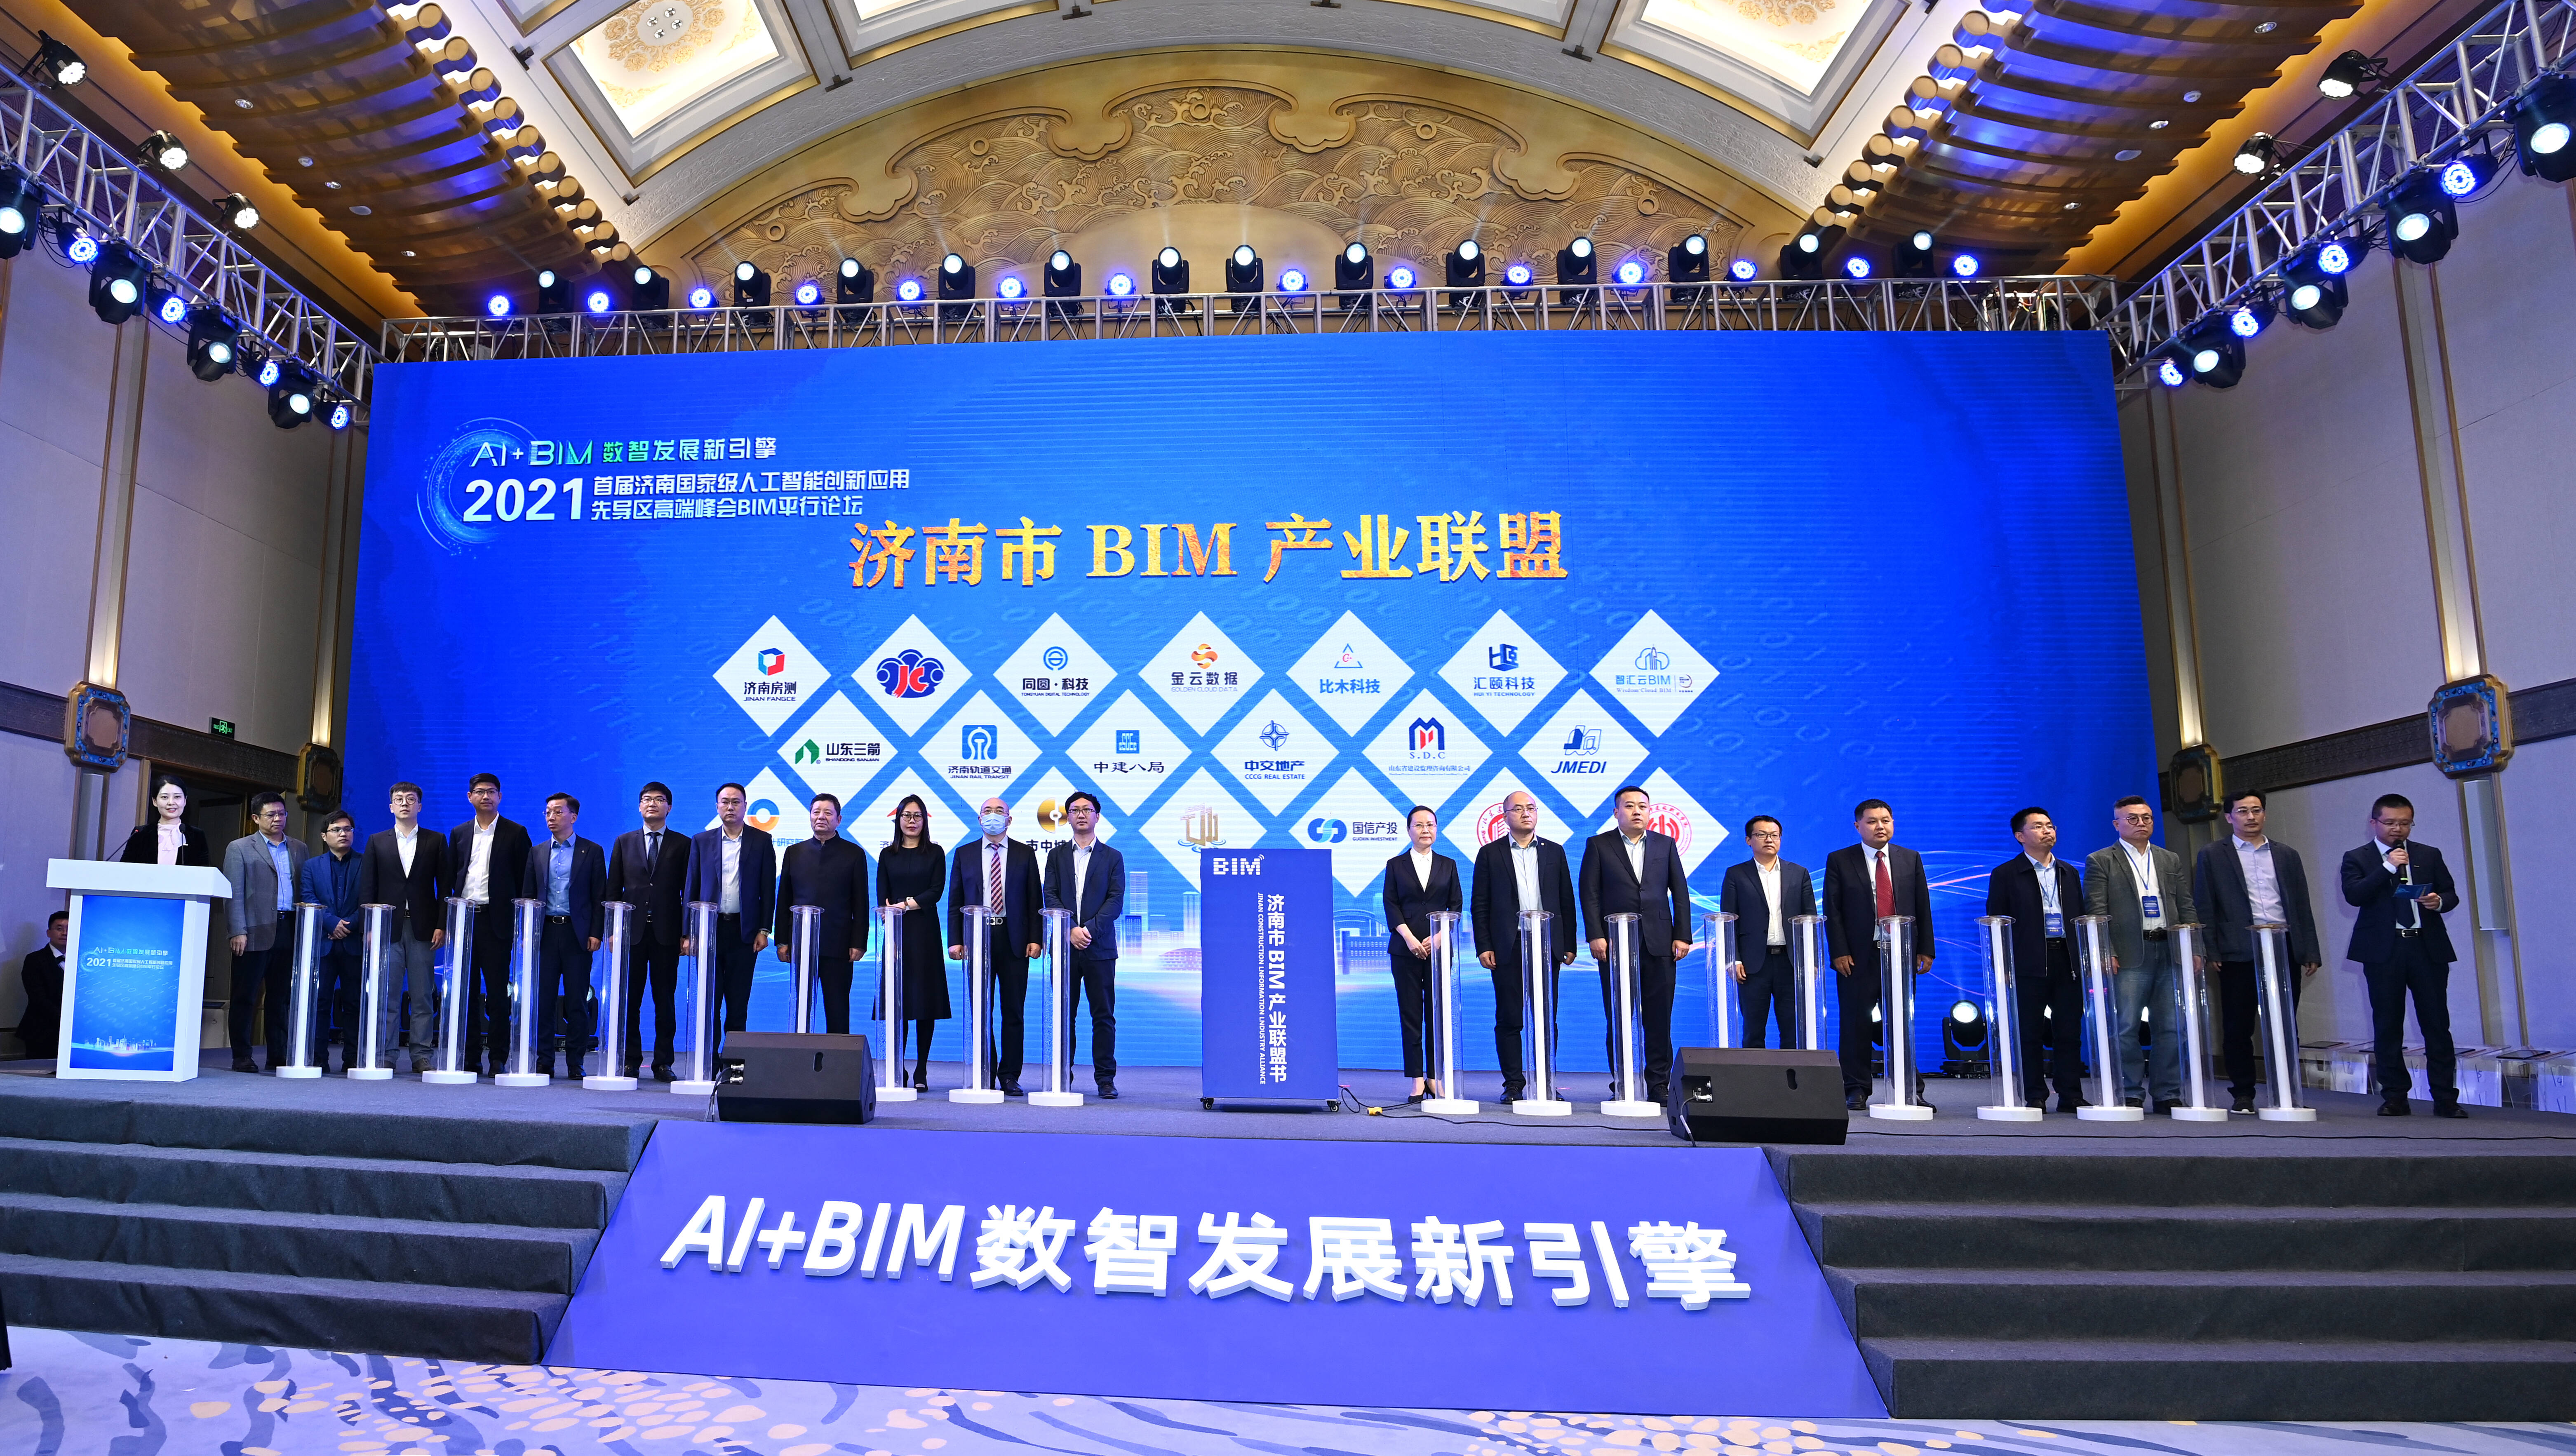 济南市BIM产业集聚区落户市中区 打造全国数字经济产业生态新高地